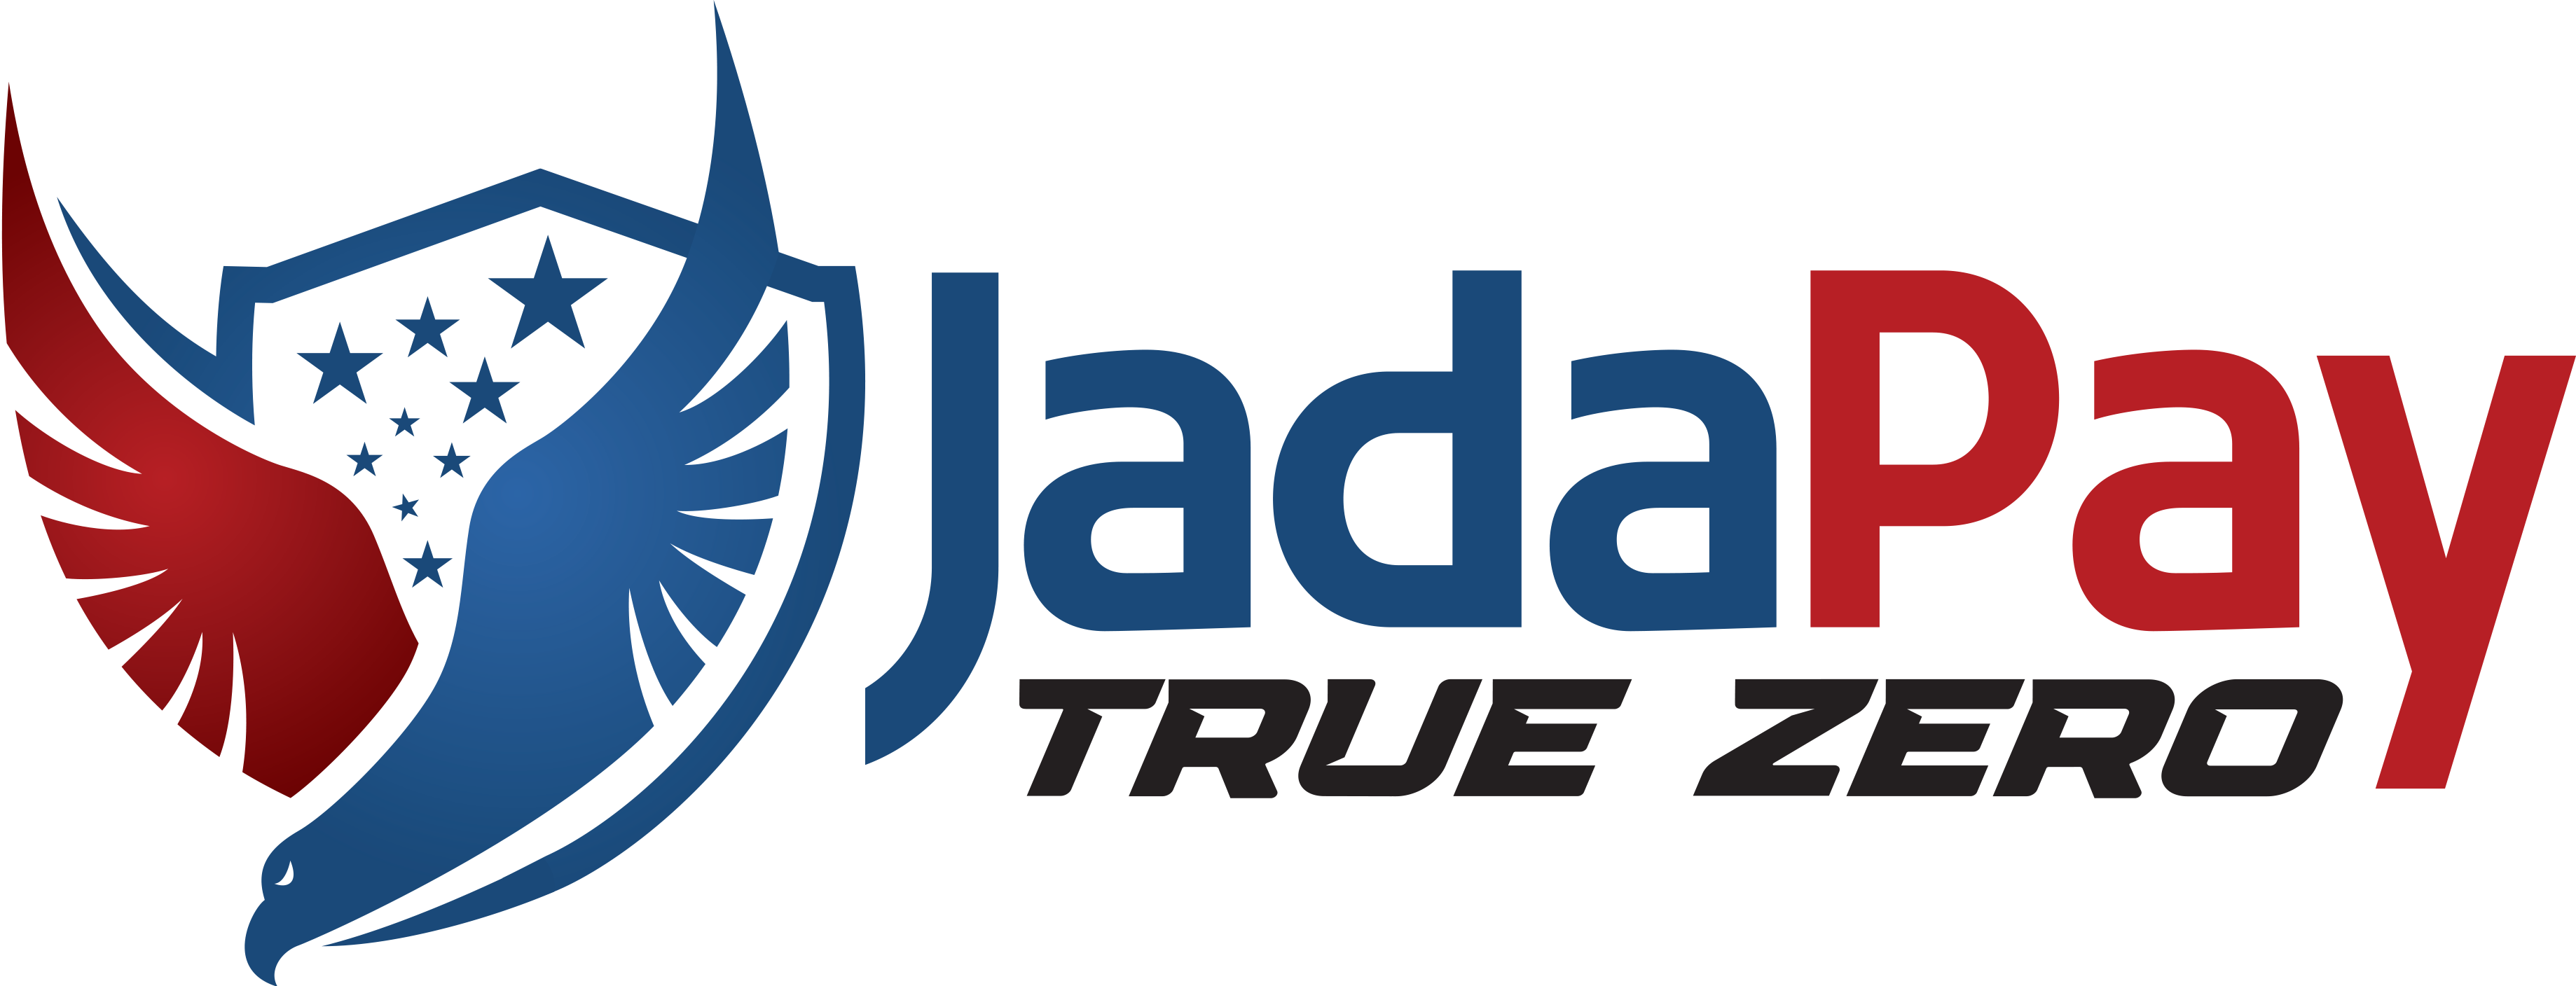 JadaPayJadaPay Indiana